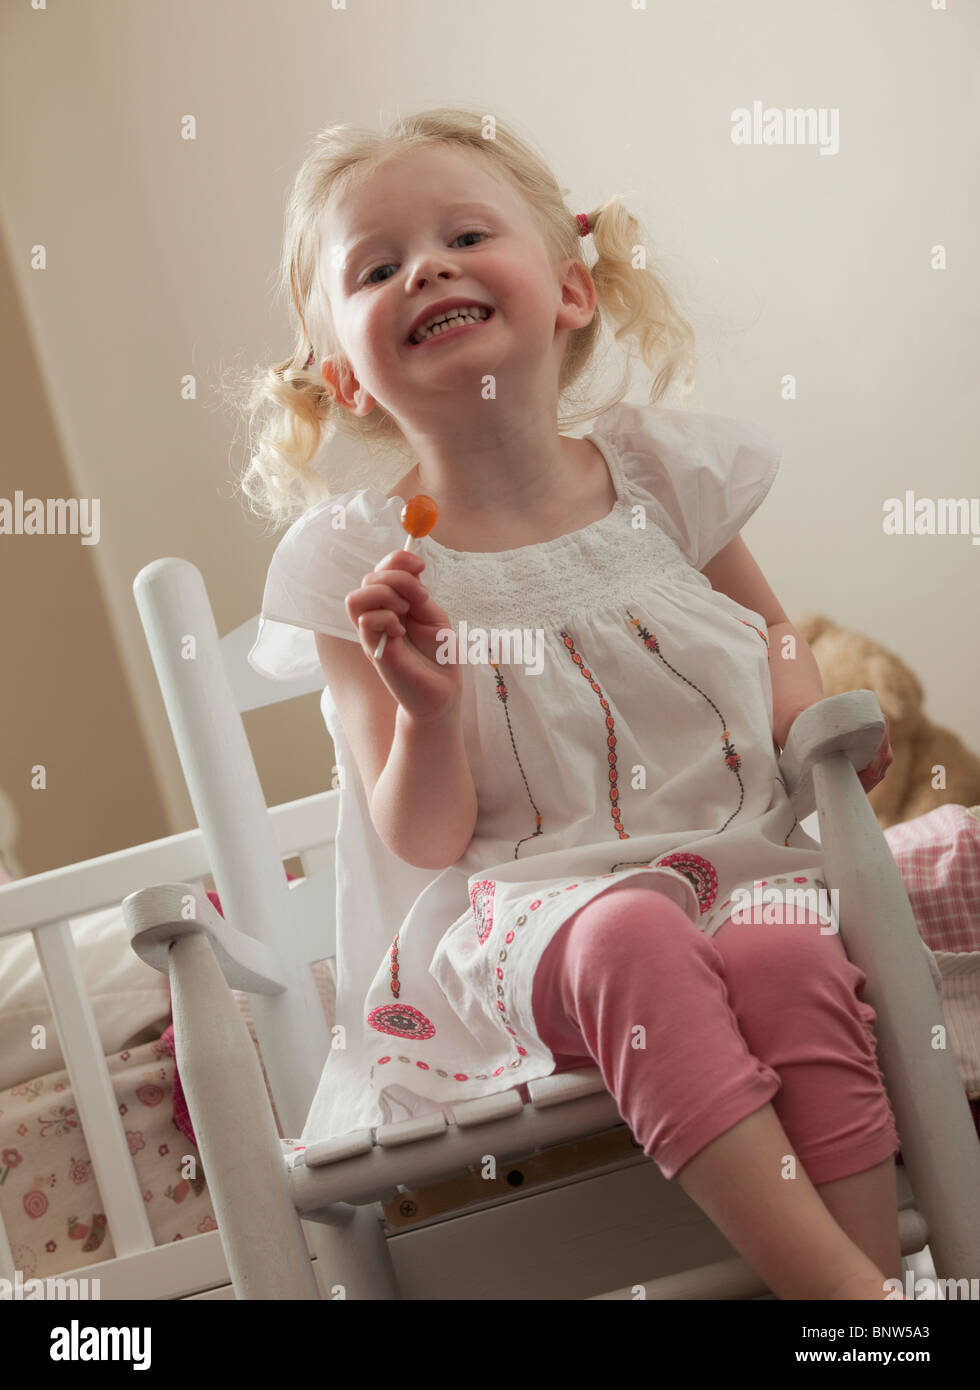 Ragazza giovane in sedia a dondolo di mangiare una ventosa Foto Stock